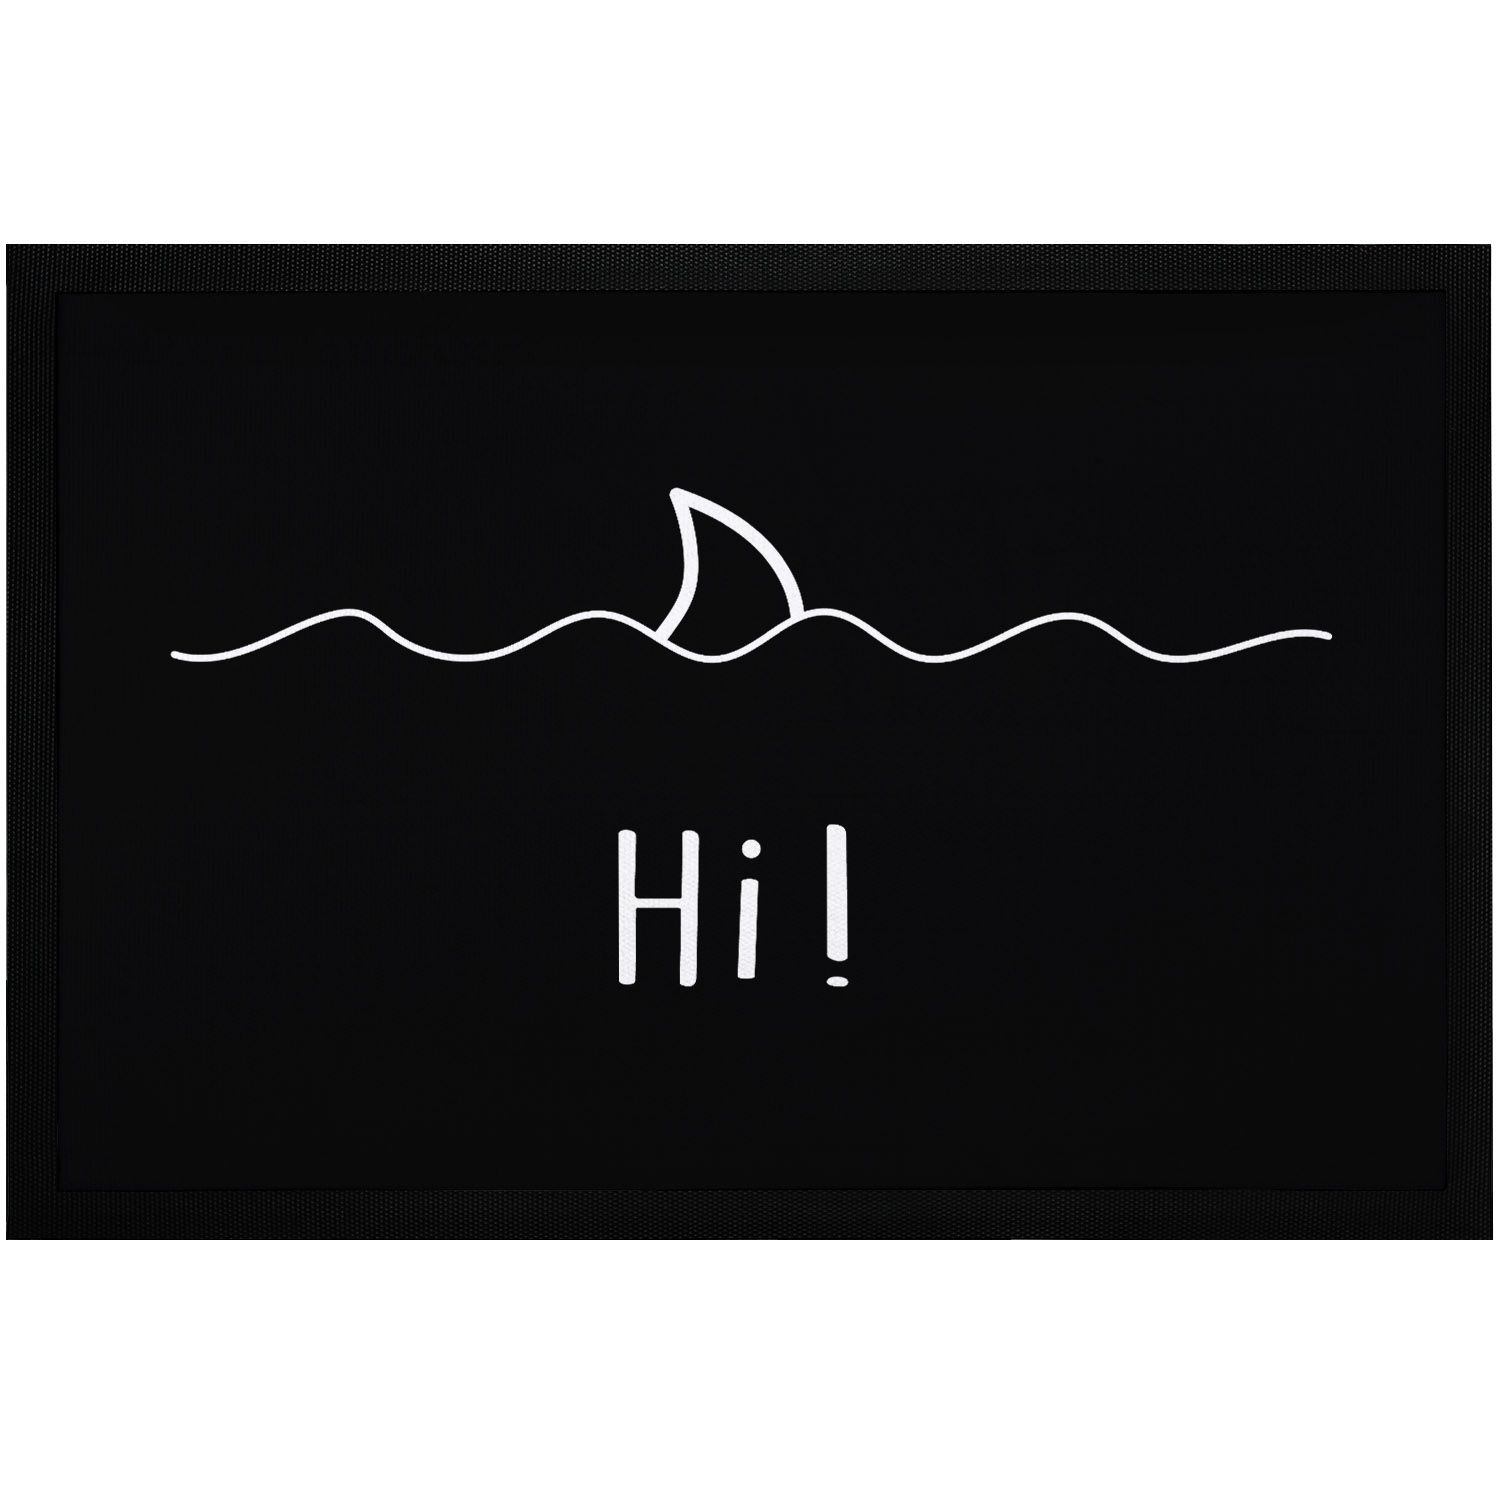 Fußmatte mit Spruch Begrüßung Hi Hai-Fisch Flosse Wellen ironisches Wortspiel rutschfest & waschbar Moonworks®